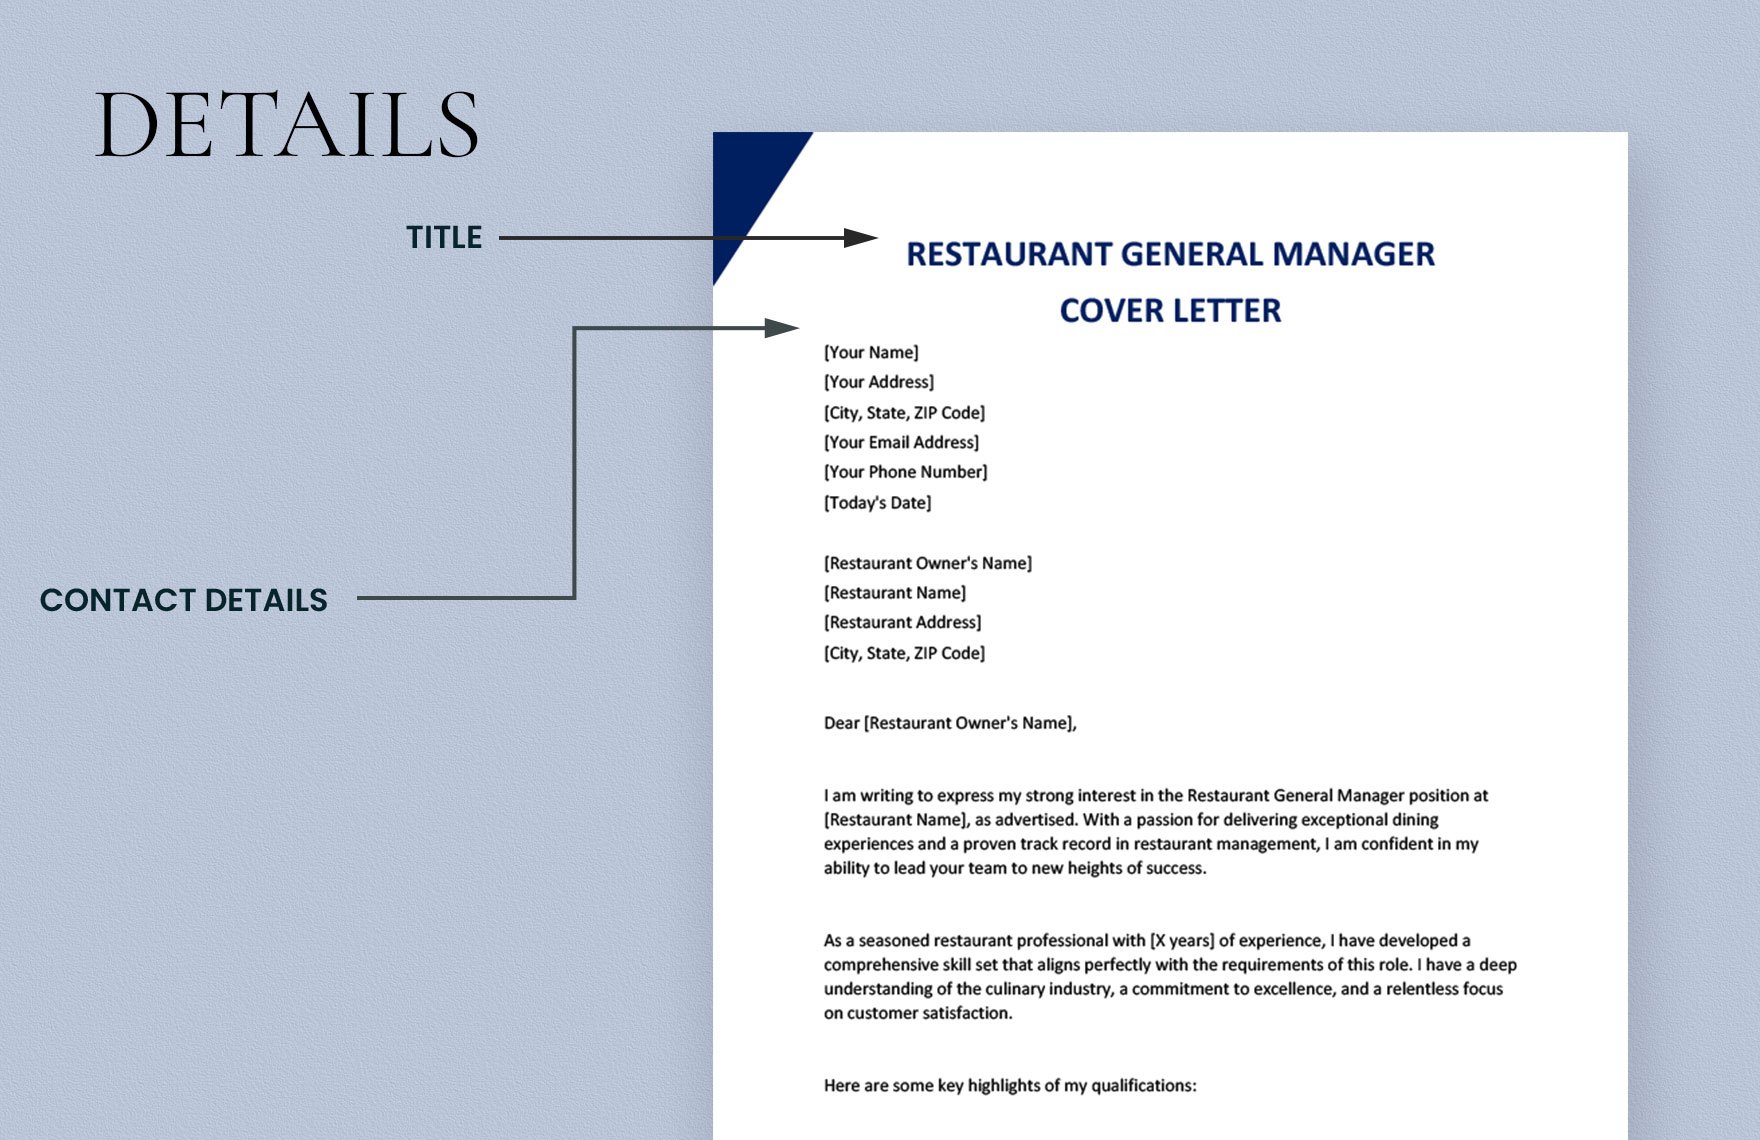 Restaurant General Manager Cover Letter